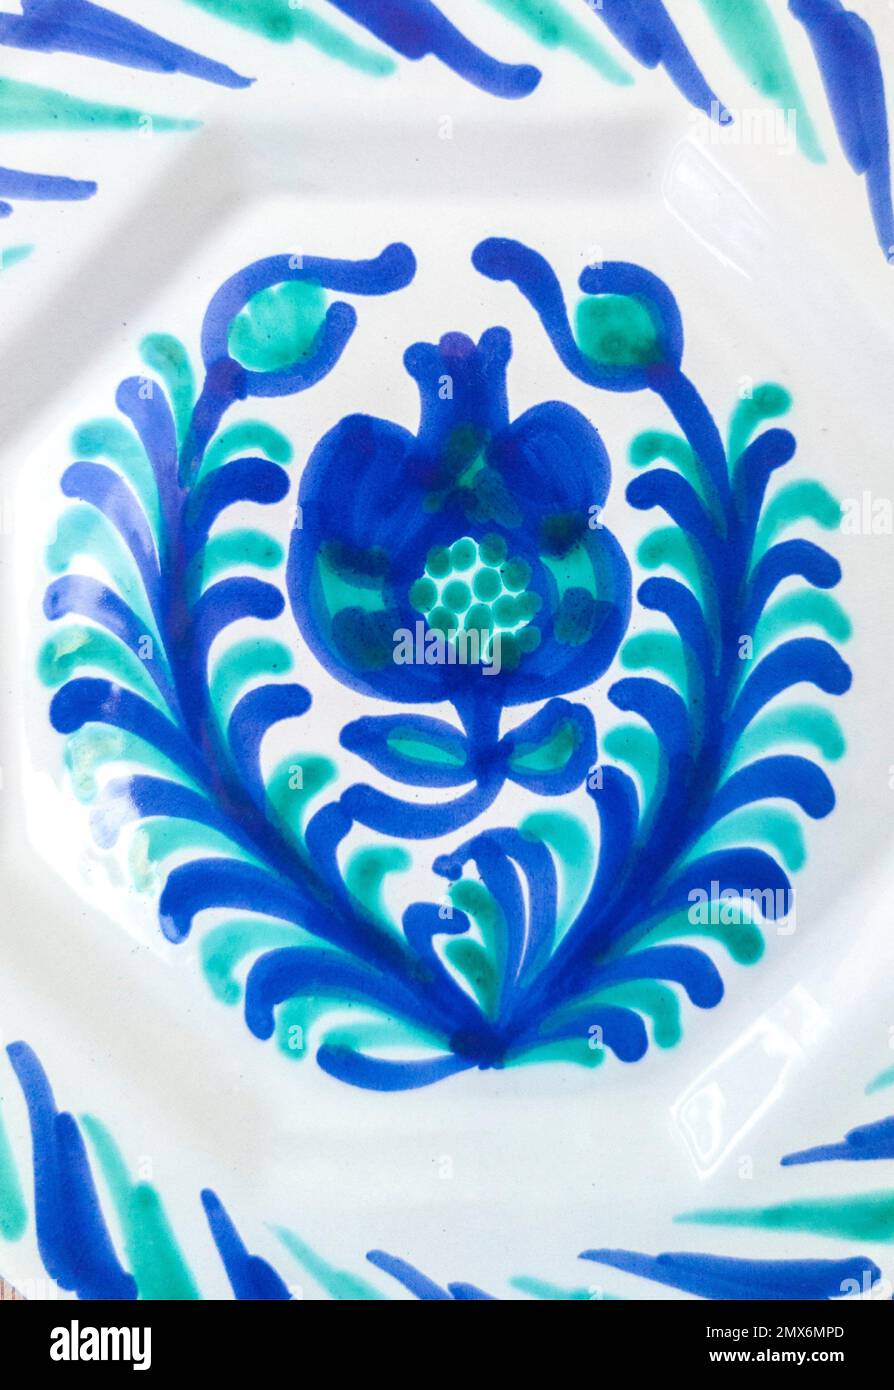 Fajalauza ceramica design, originariamente sviluppato nel quartiere Albaicin di Granada, Spagna. Foto Stock